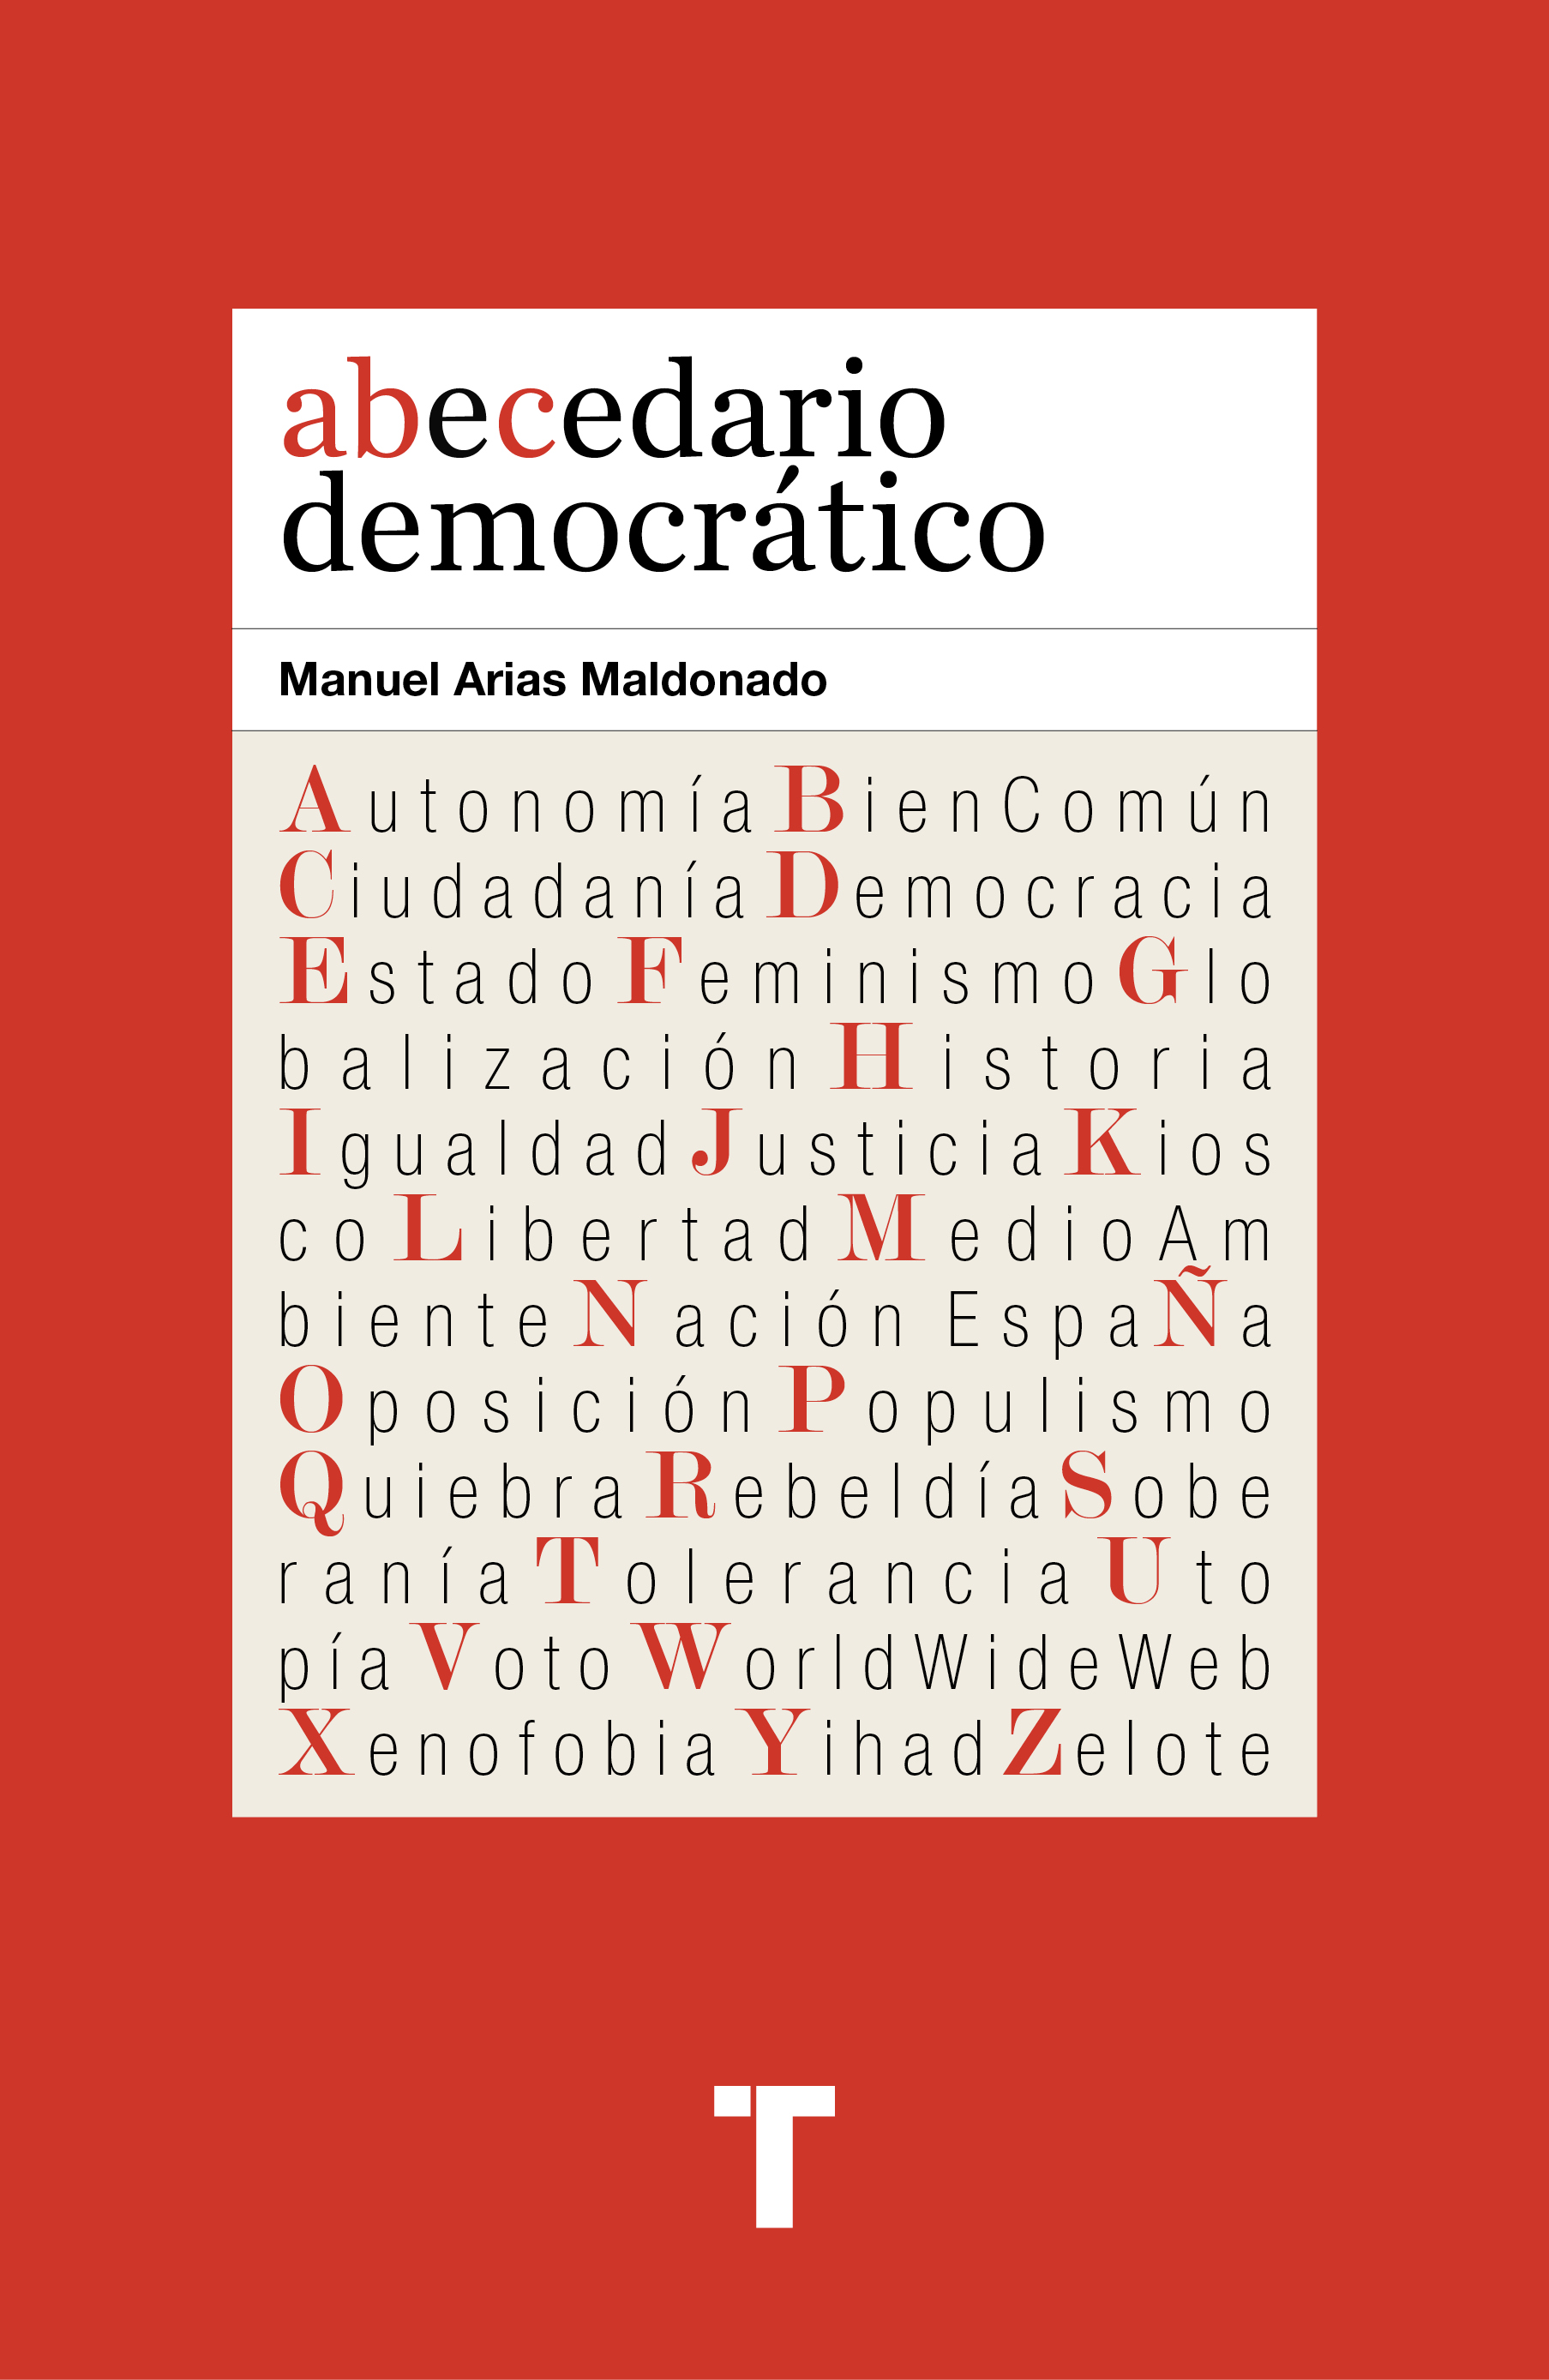 Abecedario democrático, de Manuel Arias Maldonado